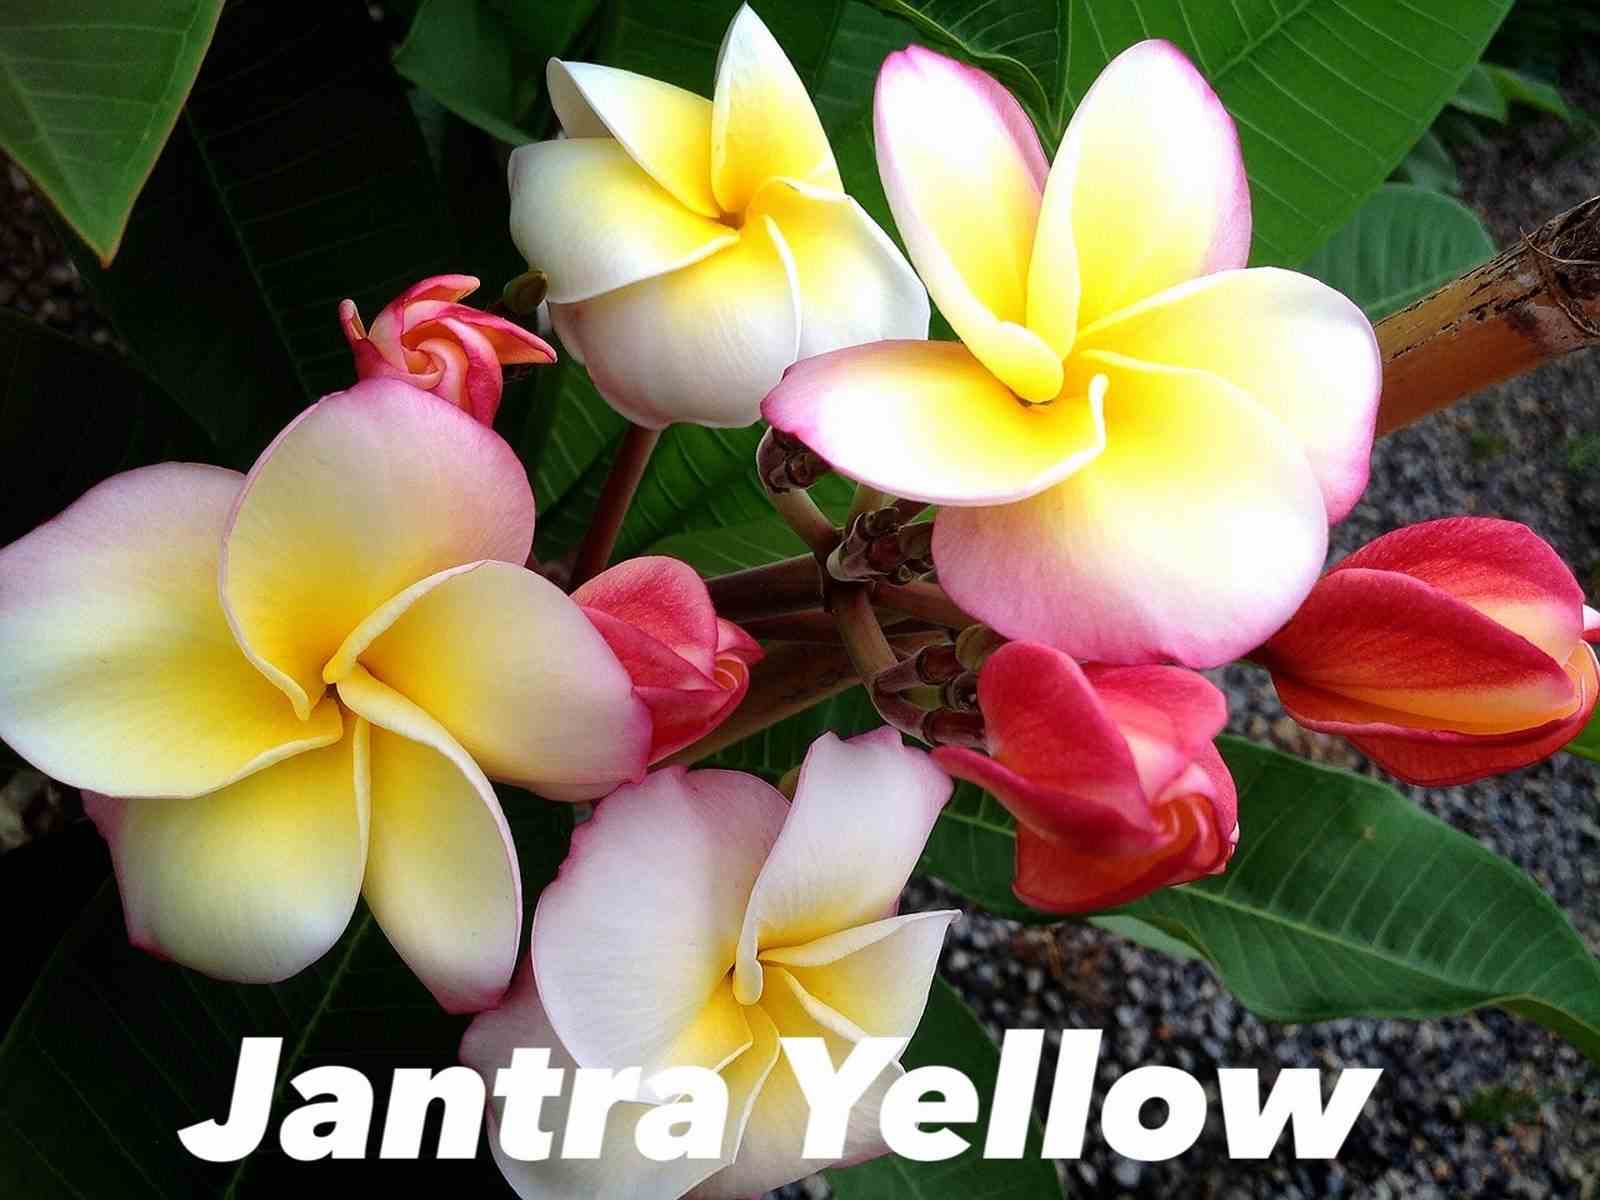 Plumeria rubra "jantra yellow" (frangipanier) taille pot de 2 litres ? 20/30 cm -   tricolor